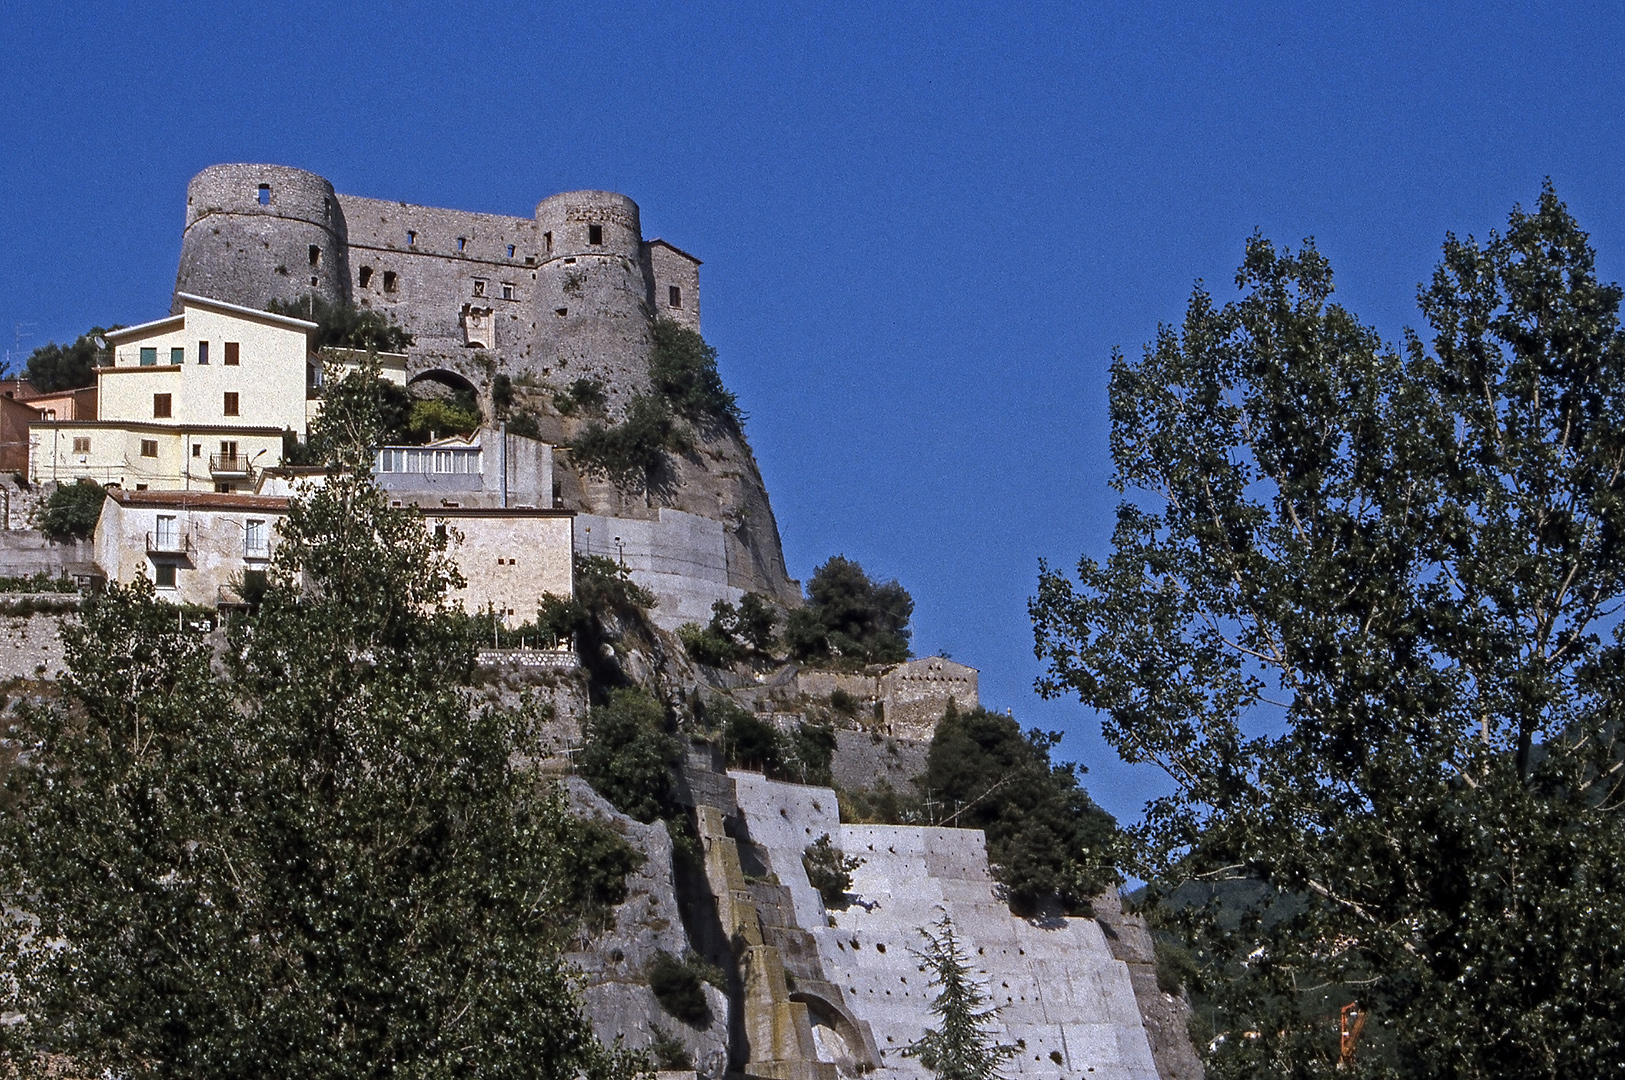 Kasteel van Cerro al Volturno (Molise, Italië), Cerro al Volturno castle (Molise, Italy)